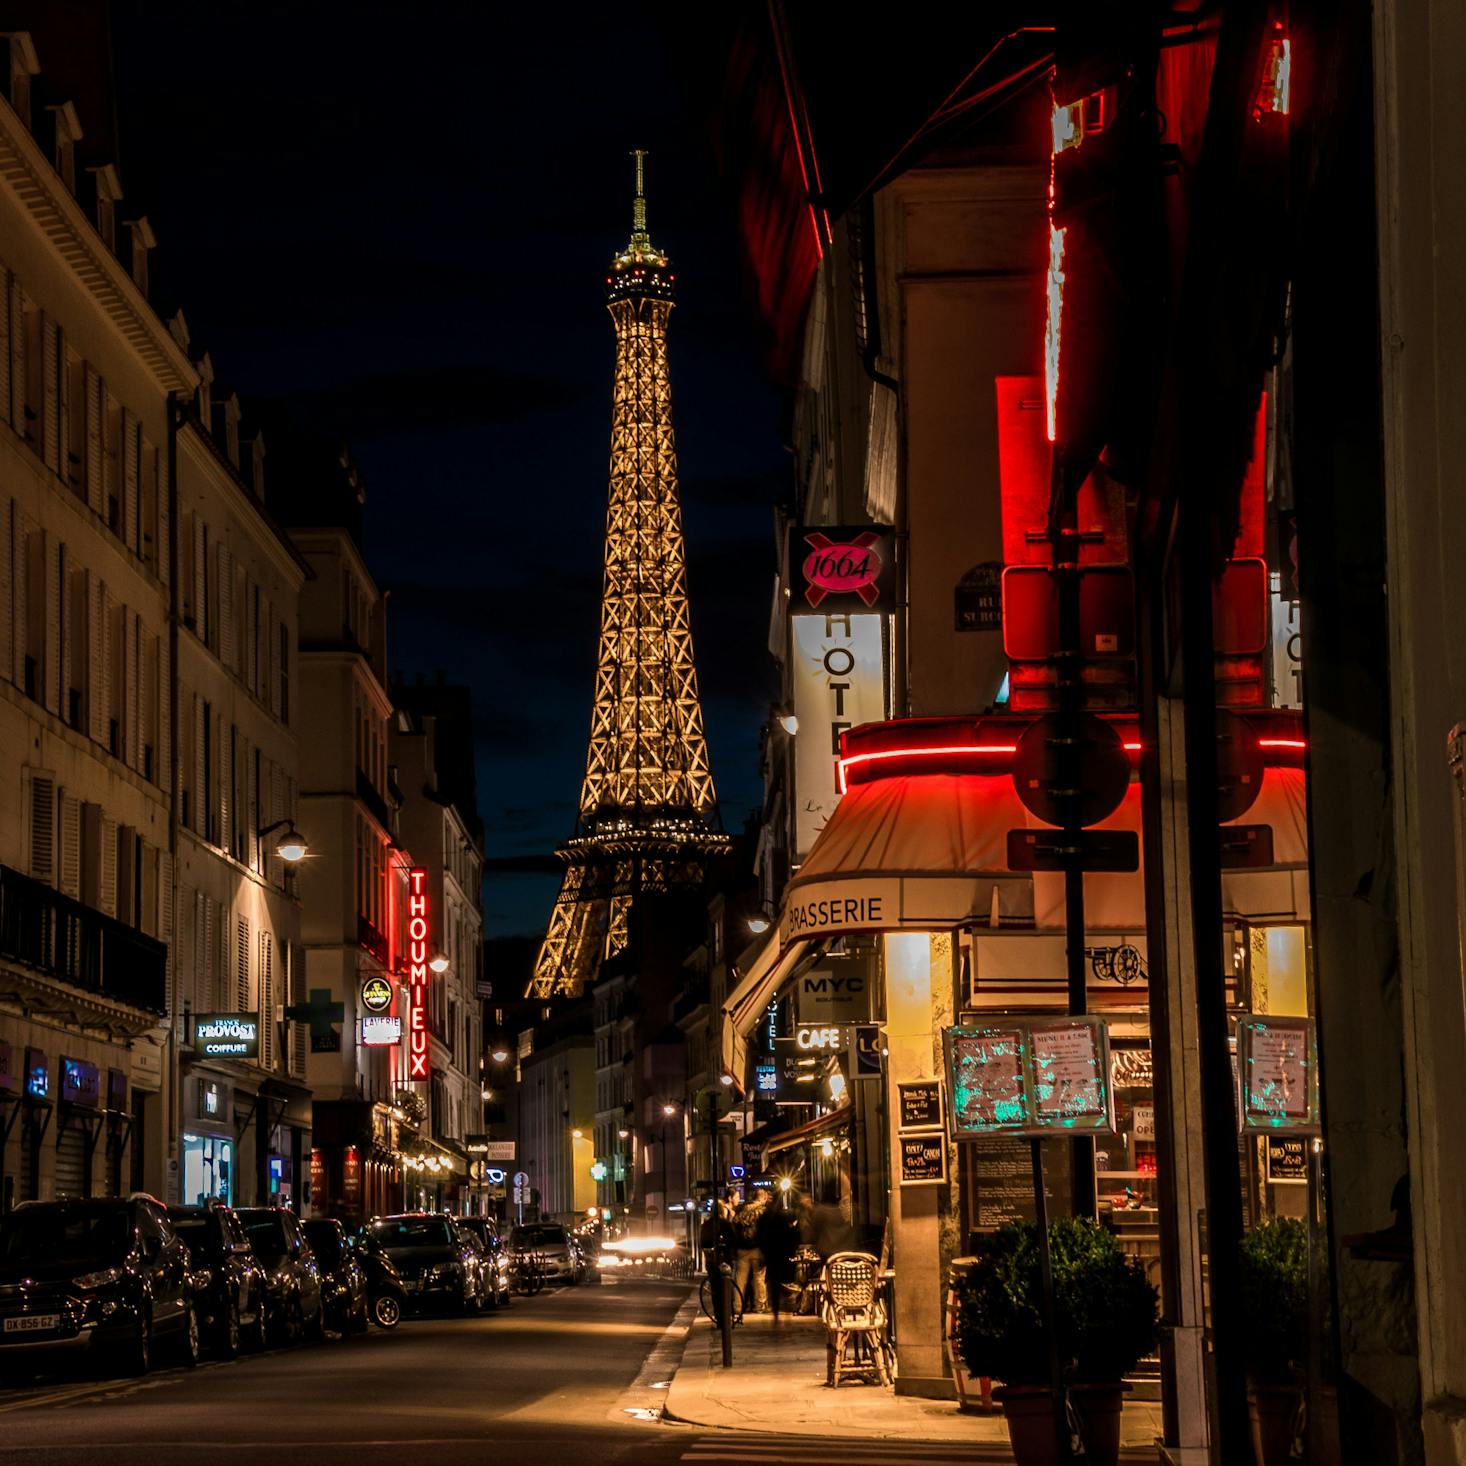 Cheap bars in Paris